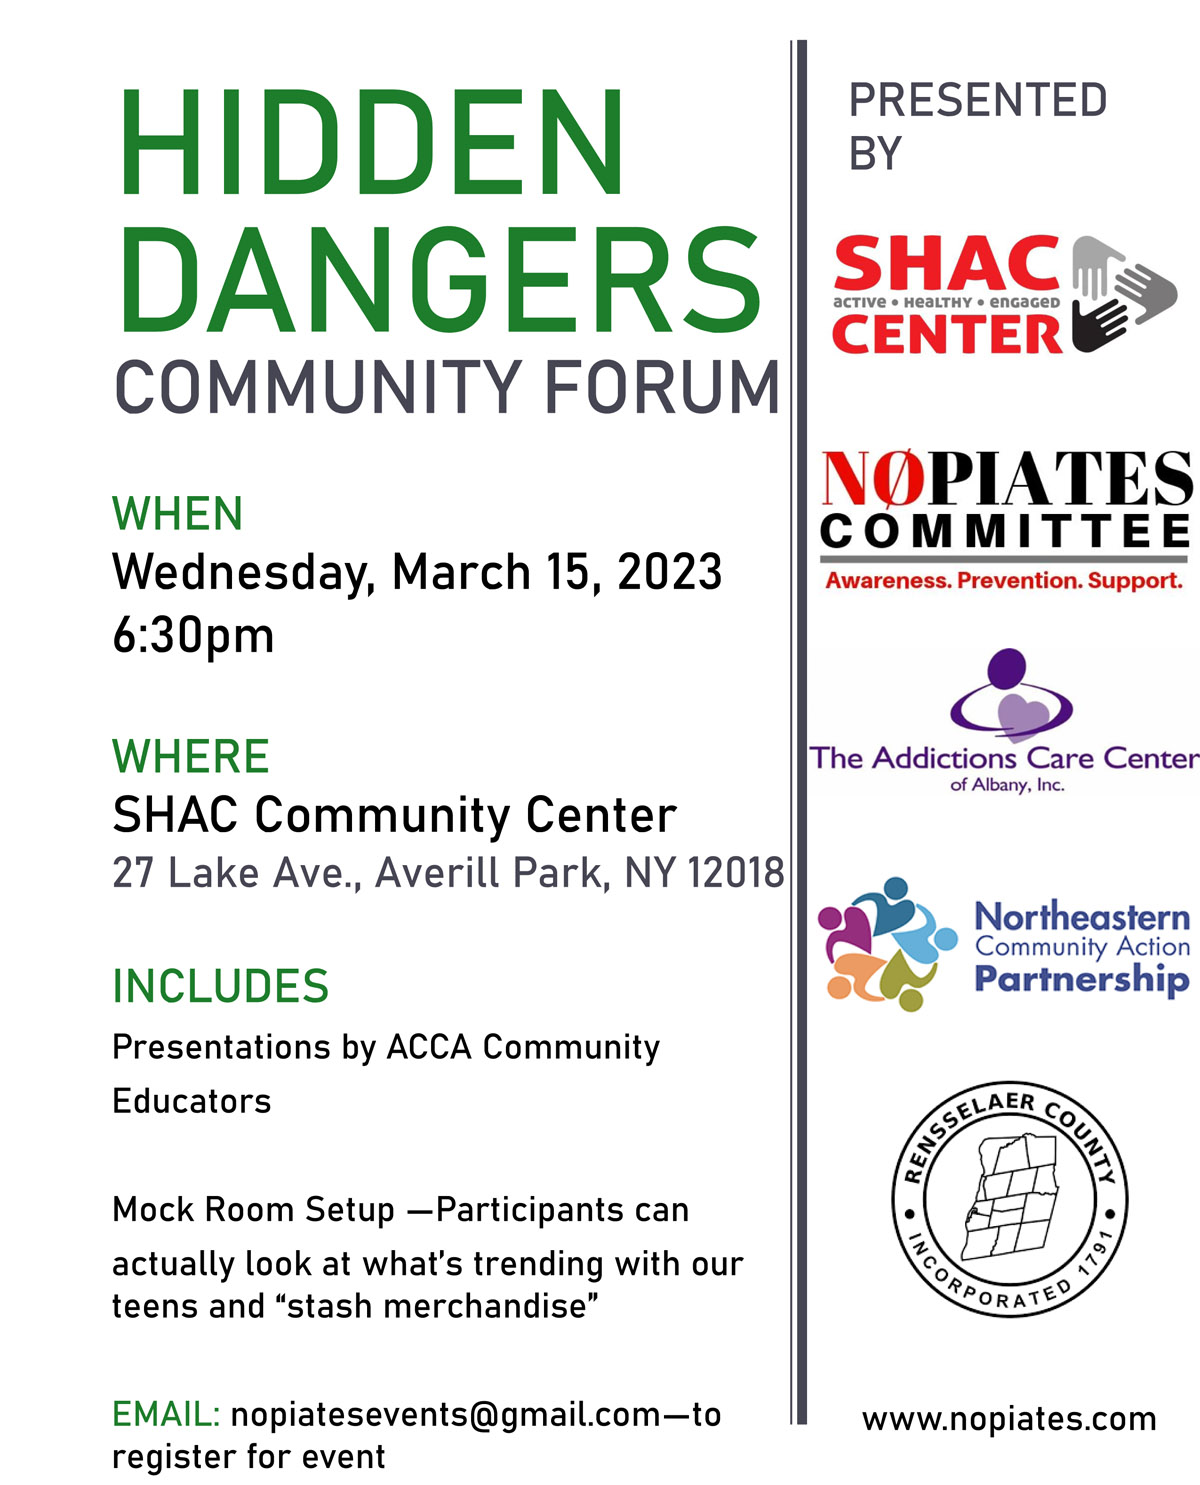 Hidden Dangers Community Forum flyer